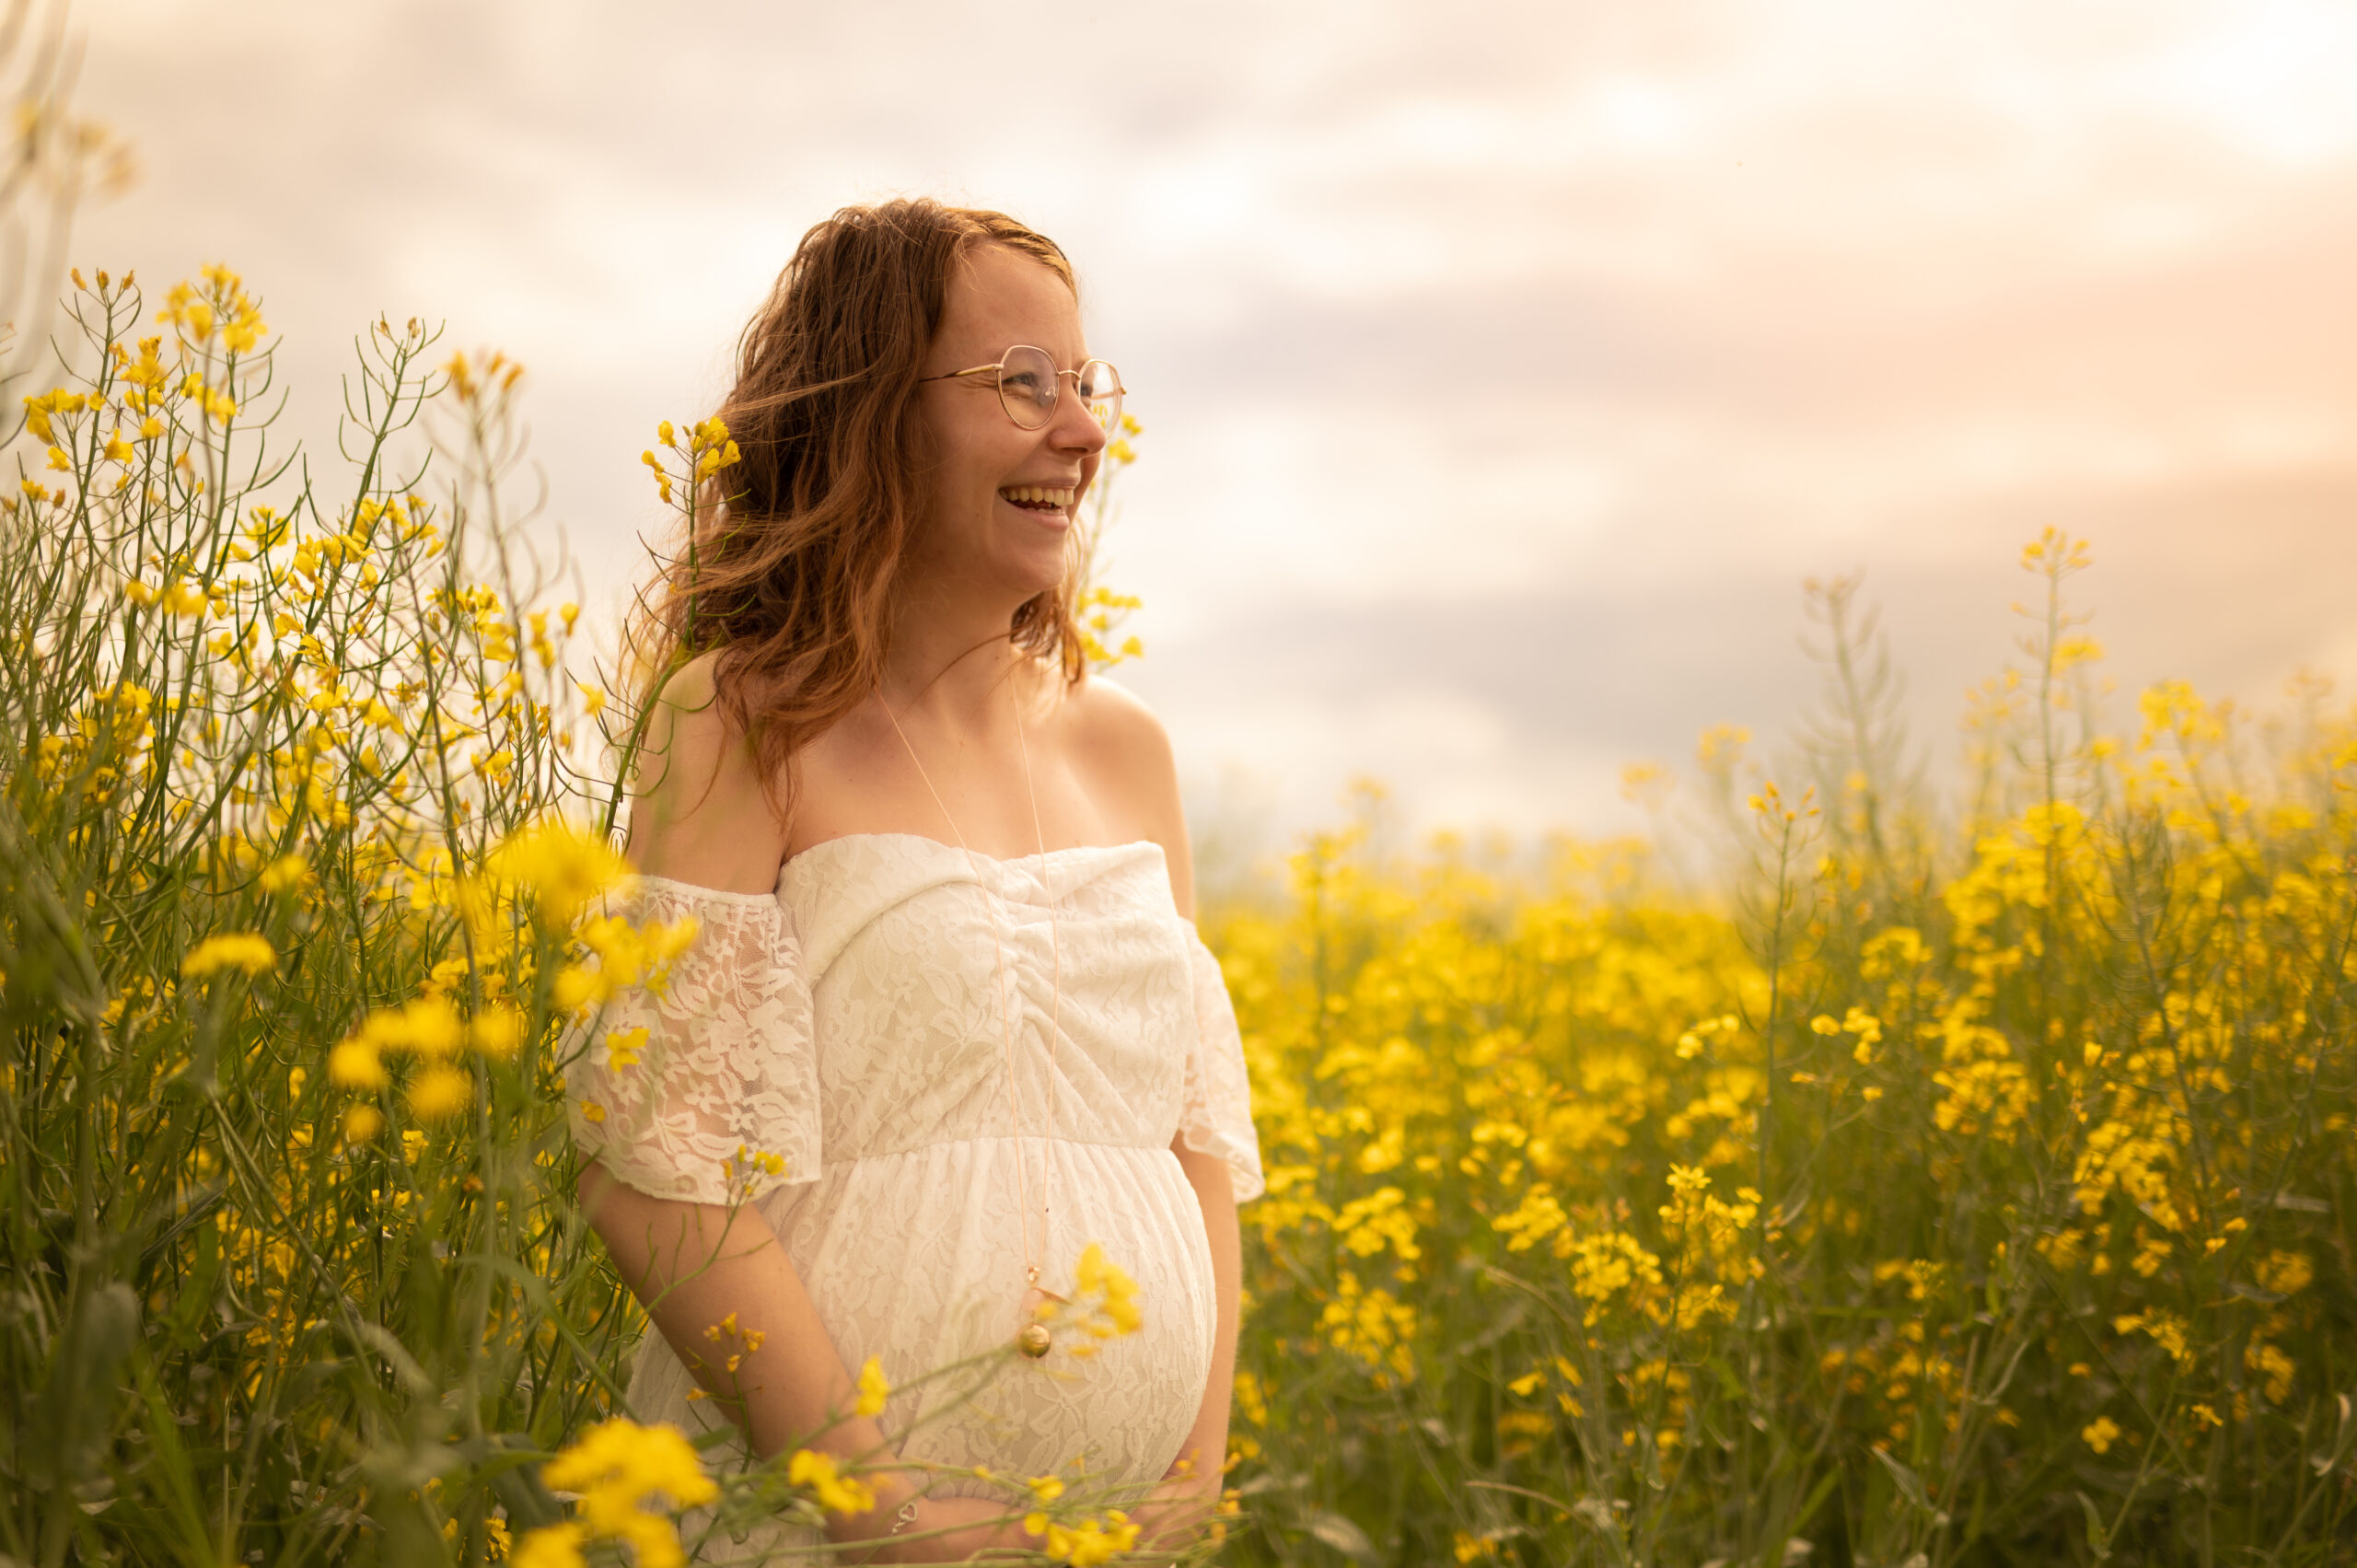 belle photo grossesse solo maman seule extérieur photographe femme robe de grossesse couleurs chaude fleurs jaunes champ fleuris fraterie frere soeur